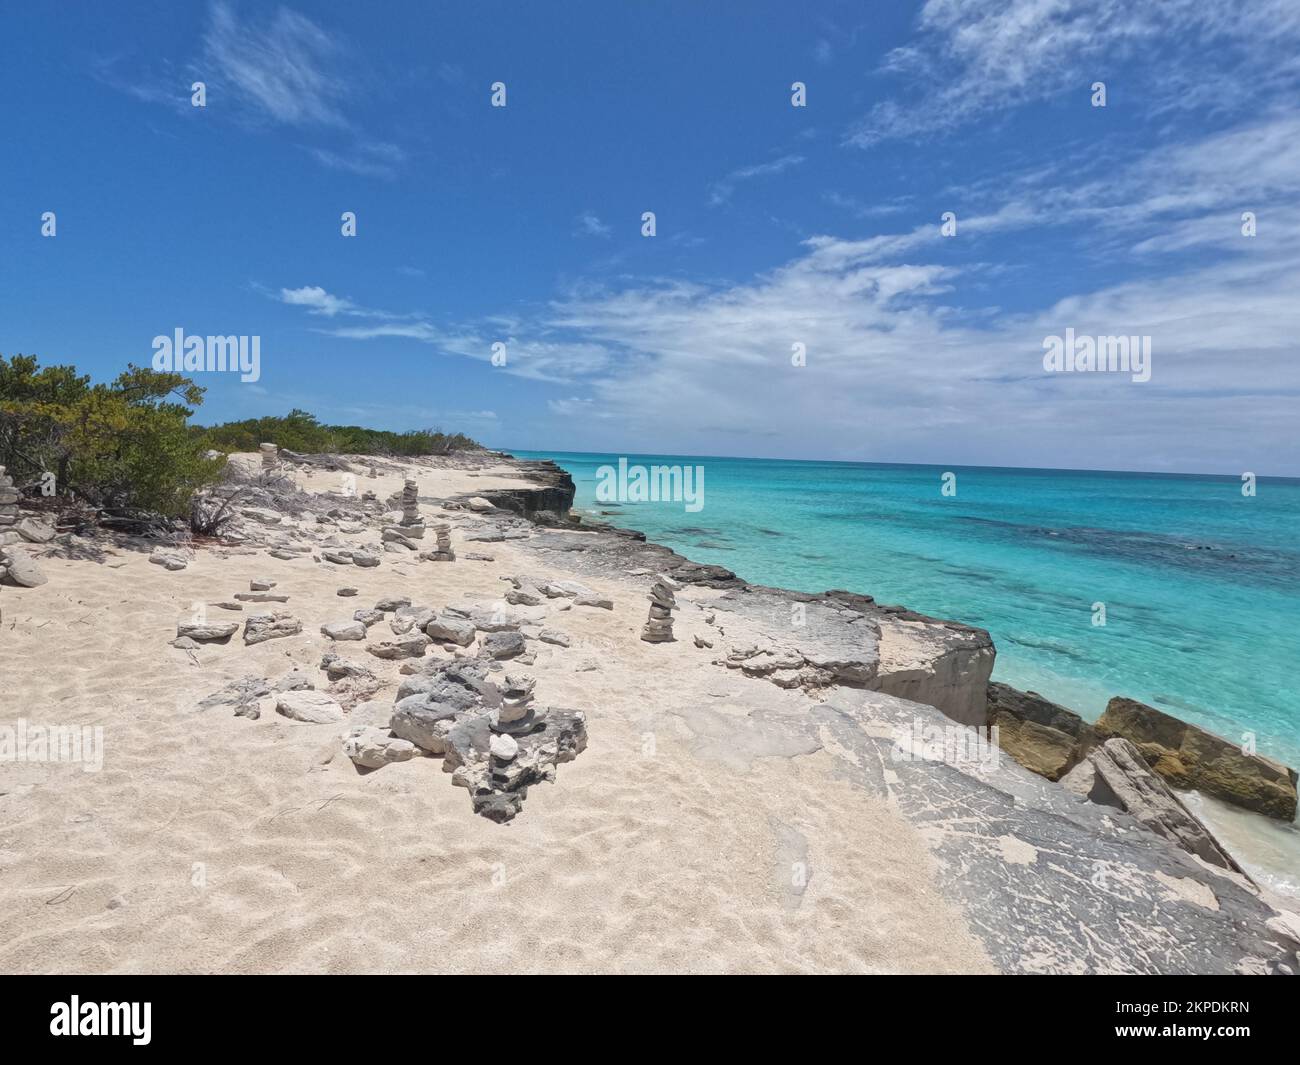 Un beau paysage d'une plage de sable avec des piles de rochers équilibrées sur la rive Banque D'Images